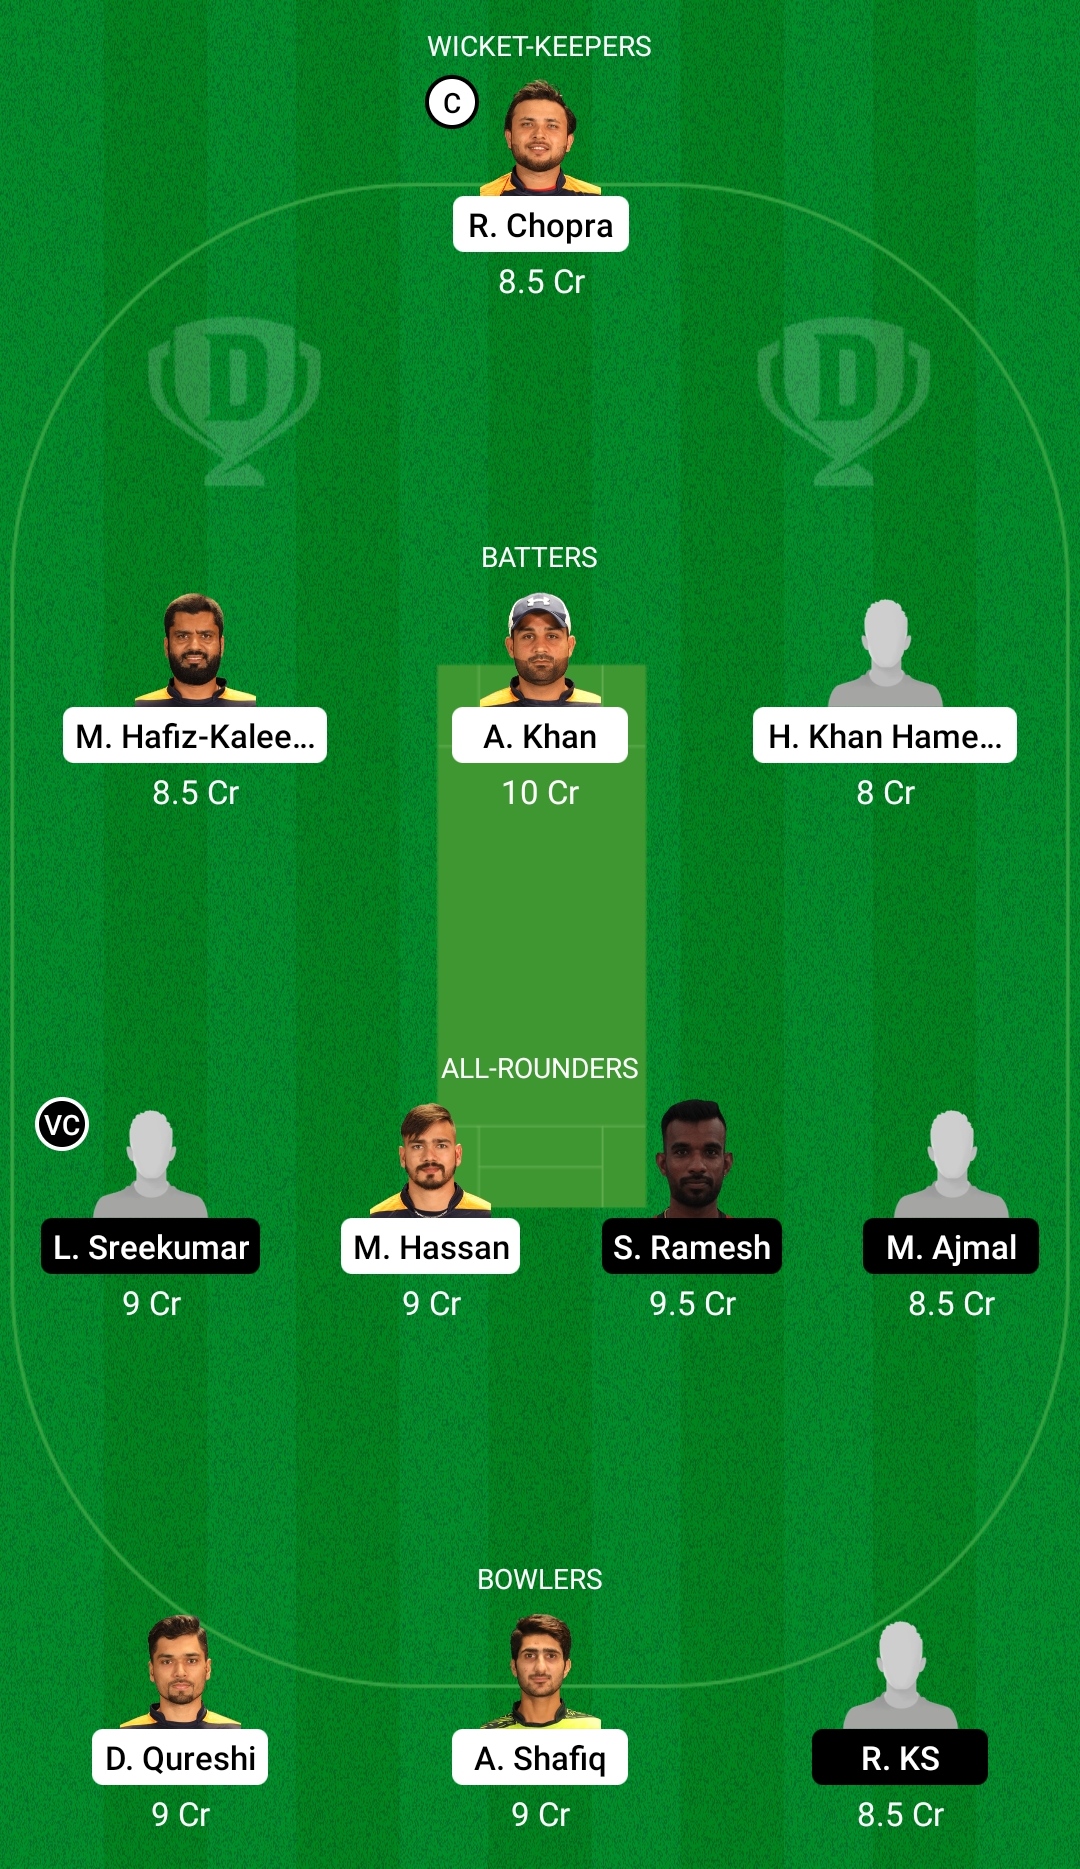 एमजीएम बनाम सीओएल ड्रीम 11 भविष्यवाणी काल्पनिक क्रिकेट टिप्स ड्रीम 11 टीम शारजाह रमजान टी 10 लीग 